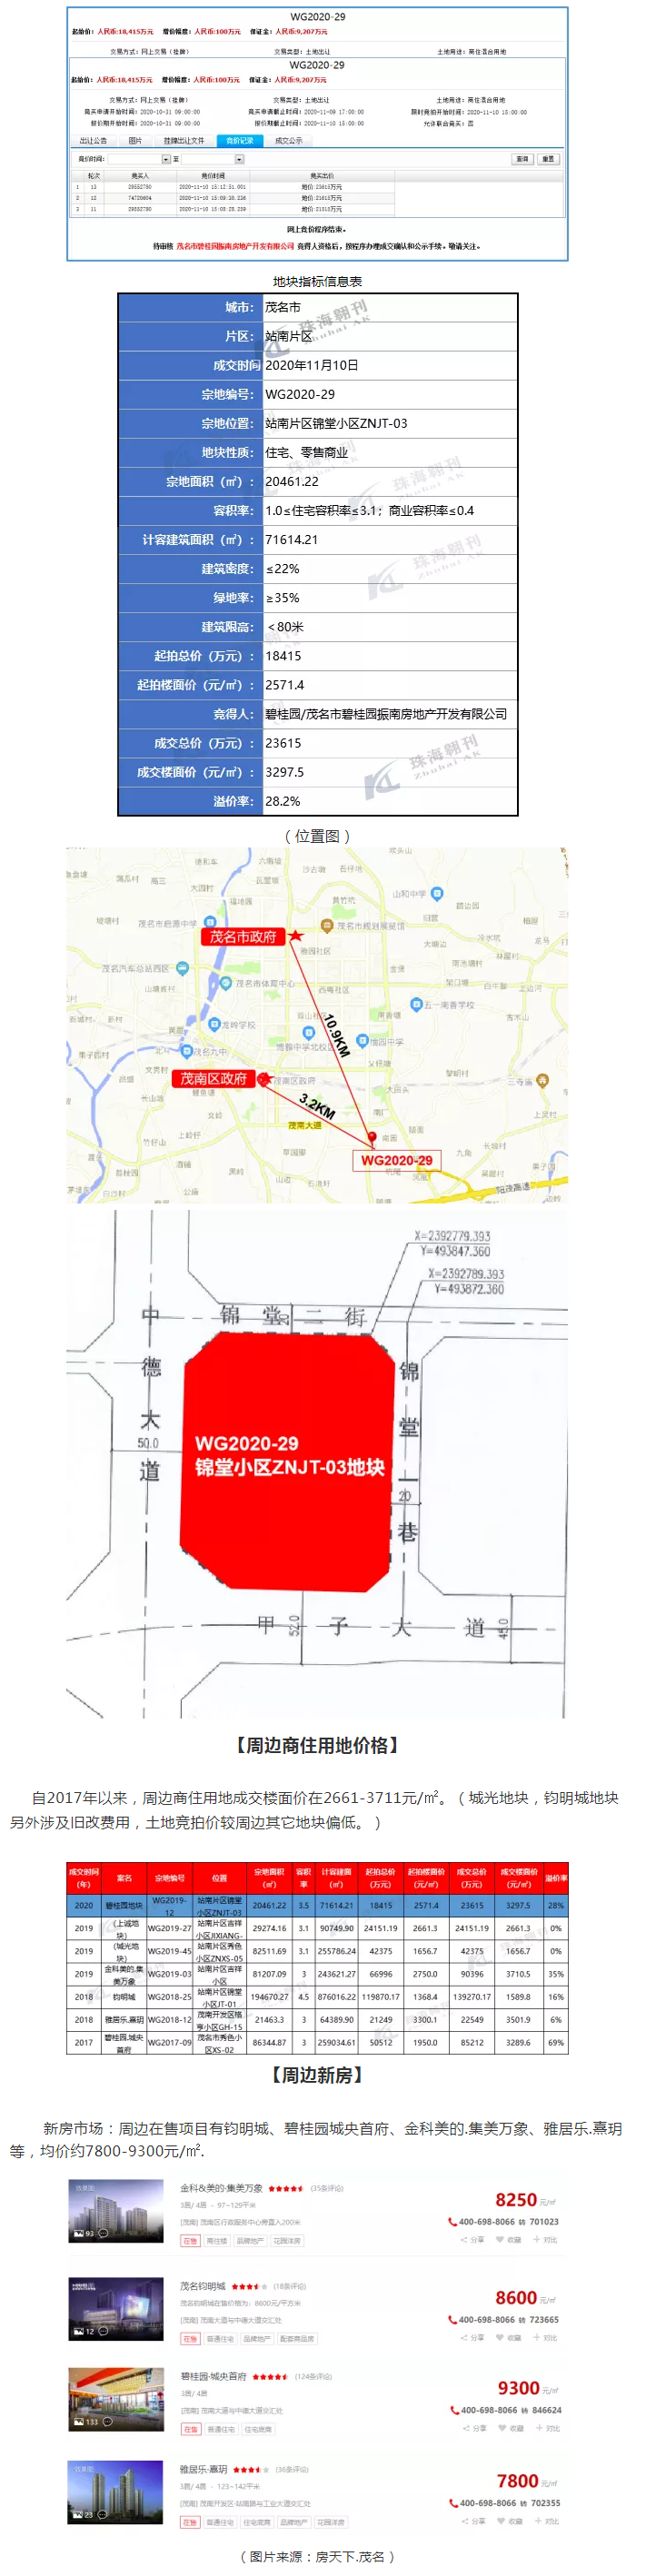 【土地成交-茂名】碧桂园2.36亿元竞得站南锦堂小区30.7亩商住用地 溢价率28%